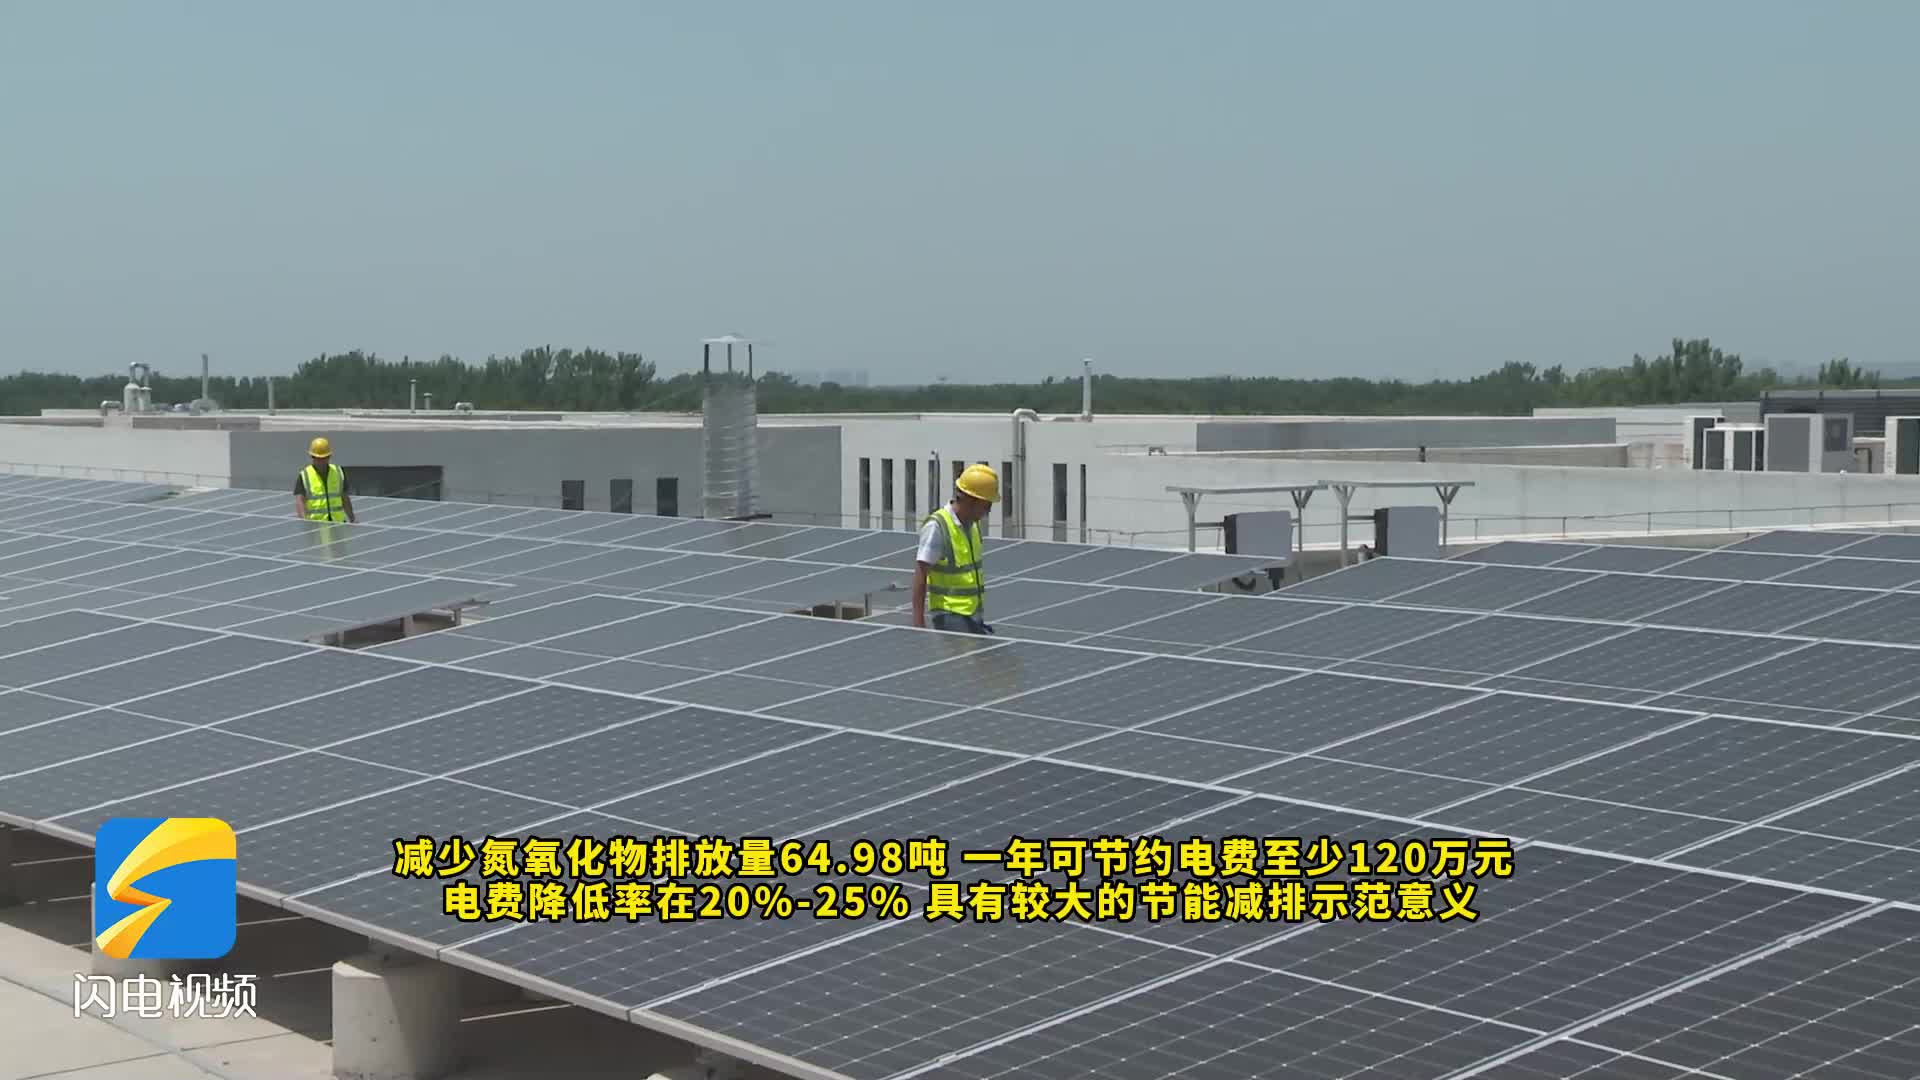 每年节省电费120万元 济南高新区打造节能减排新典范